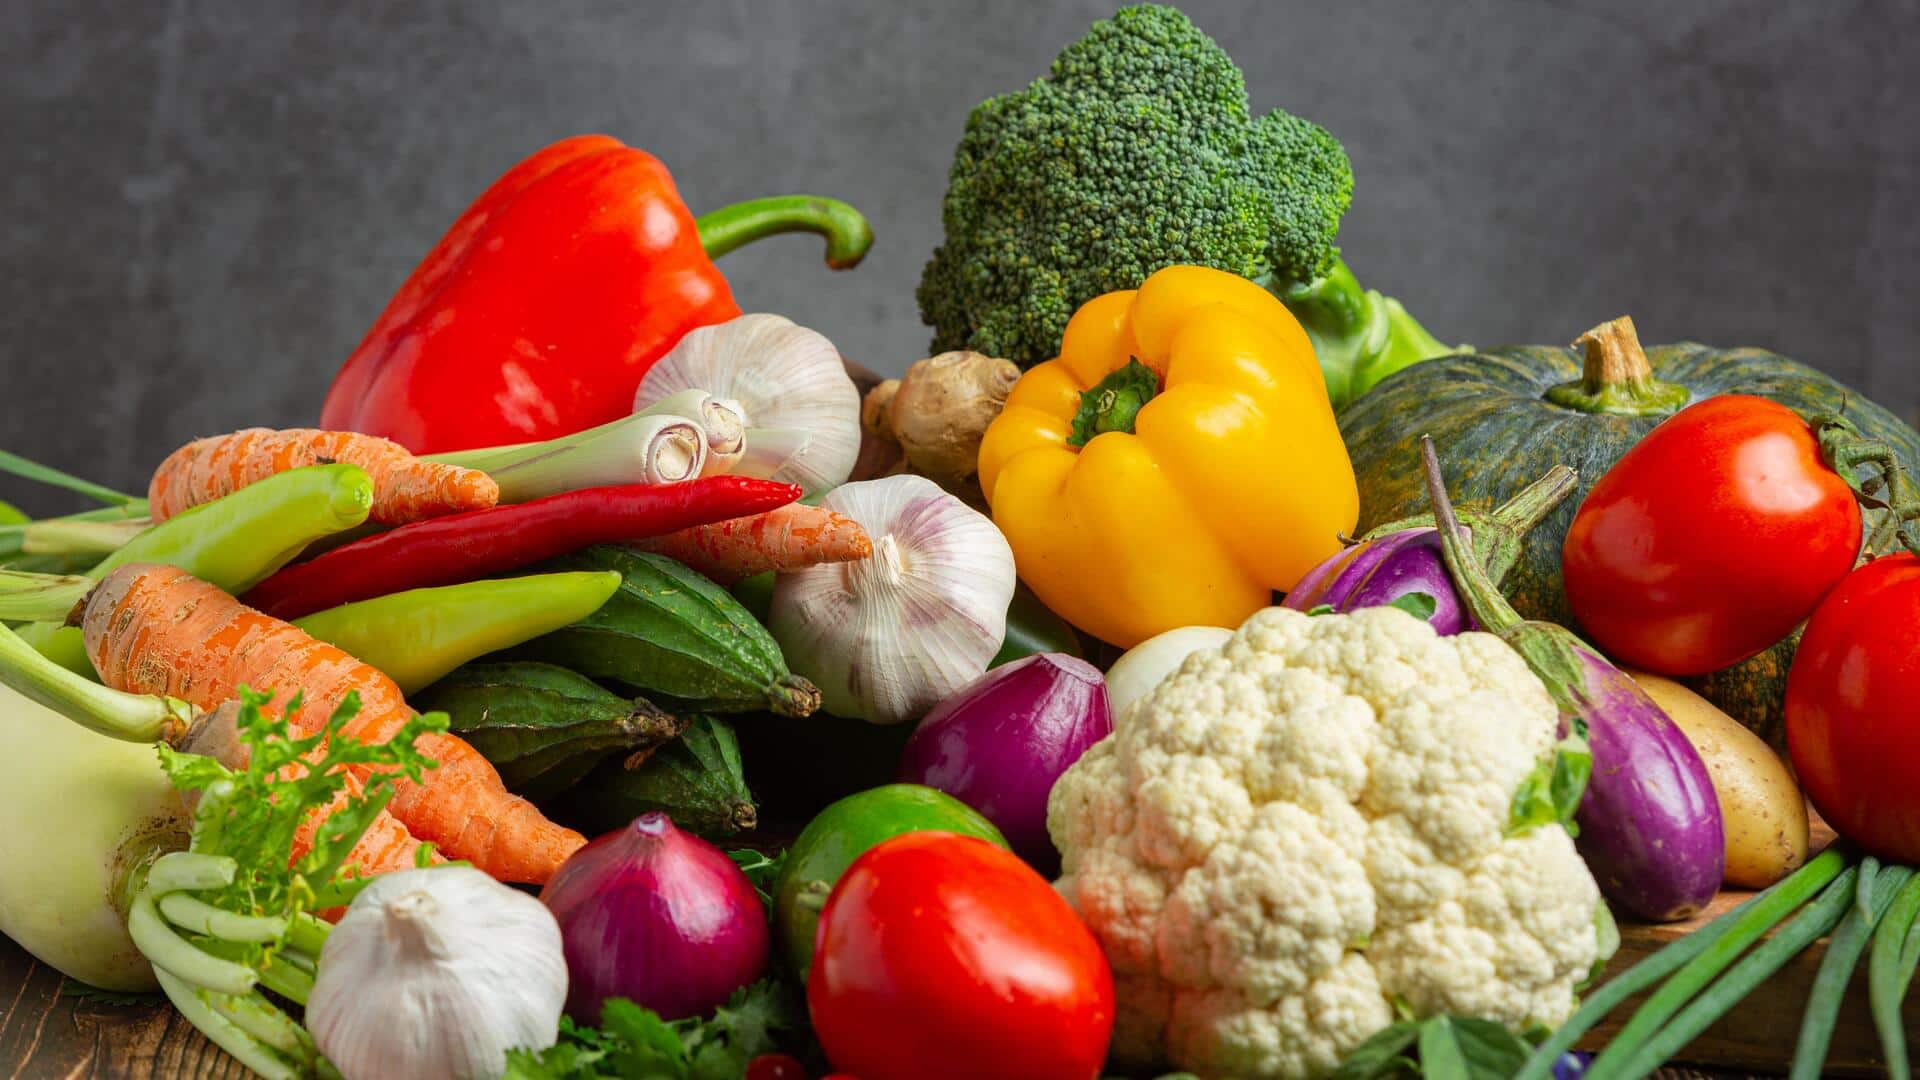 सर्दियों में आने वाली इन सब्जियों को डाइट में करें शामिल, सेहत के लिए हैं फायदेमंद